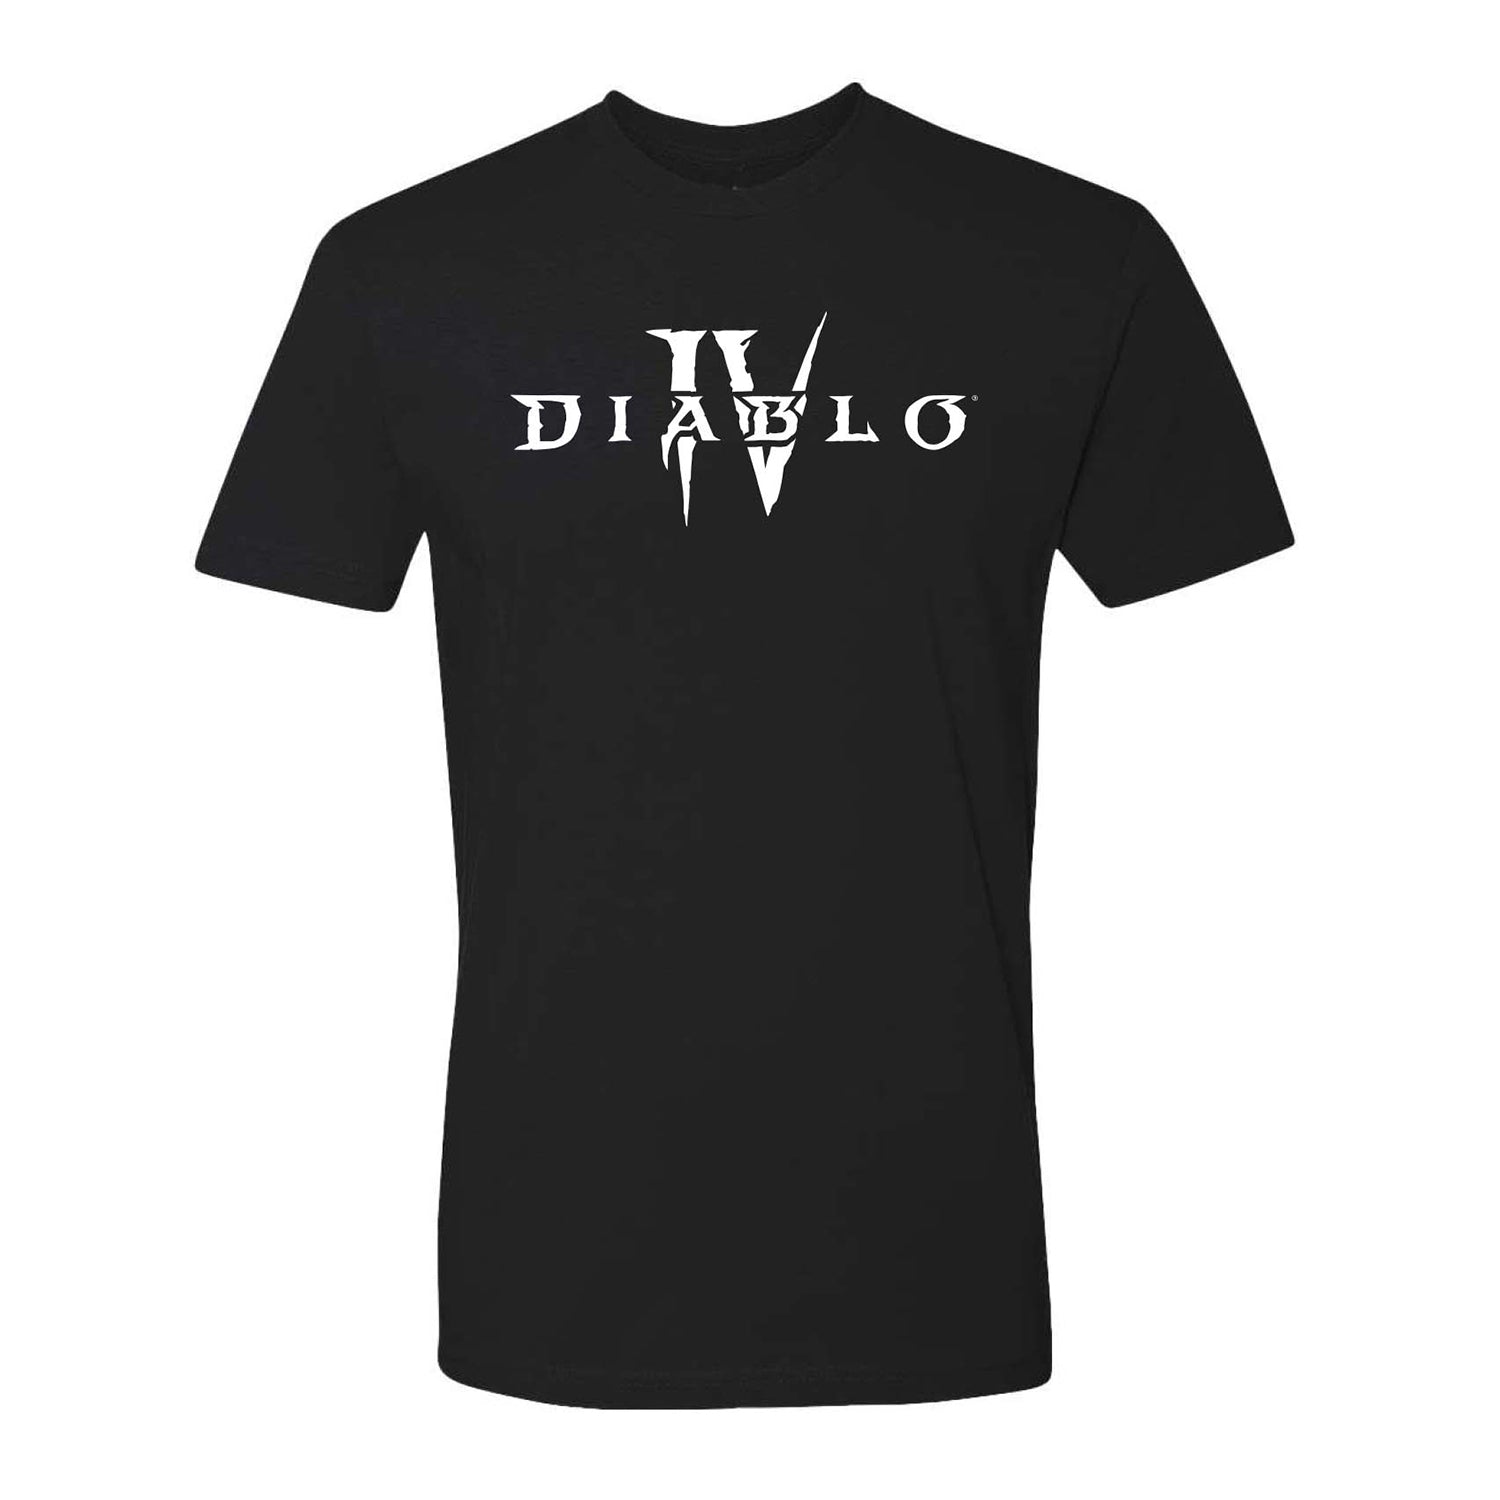 Diablo IV White Core Logo Black T-Shirt - Front View